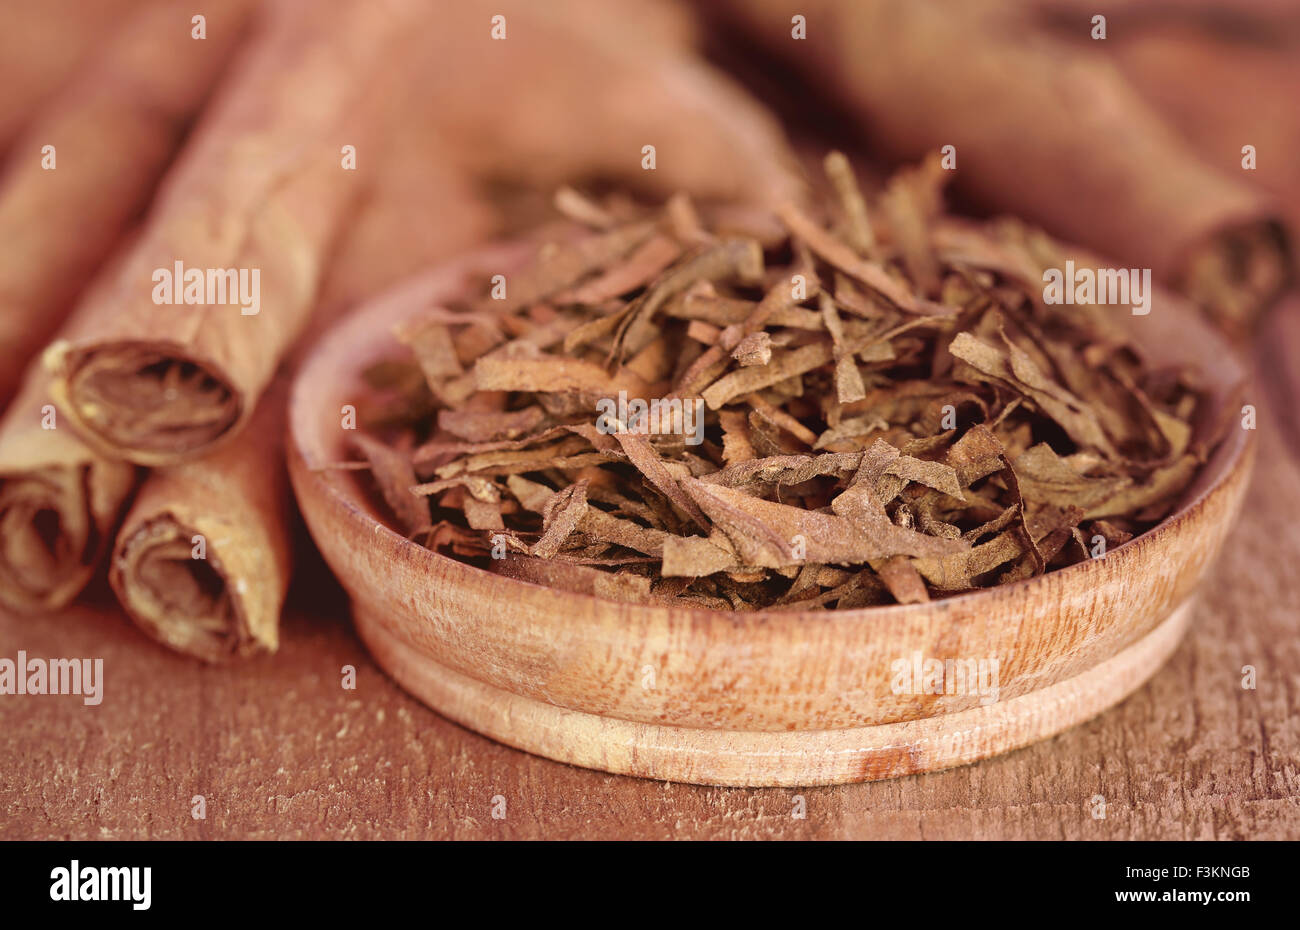 Asciugare le foglie di tabacco su una superficie di legno Foto Stock